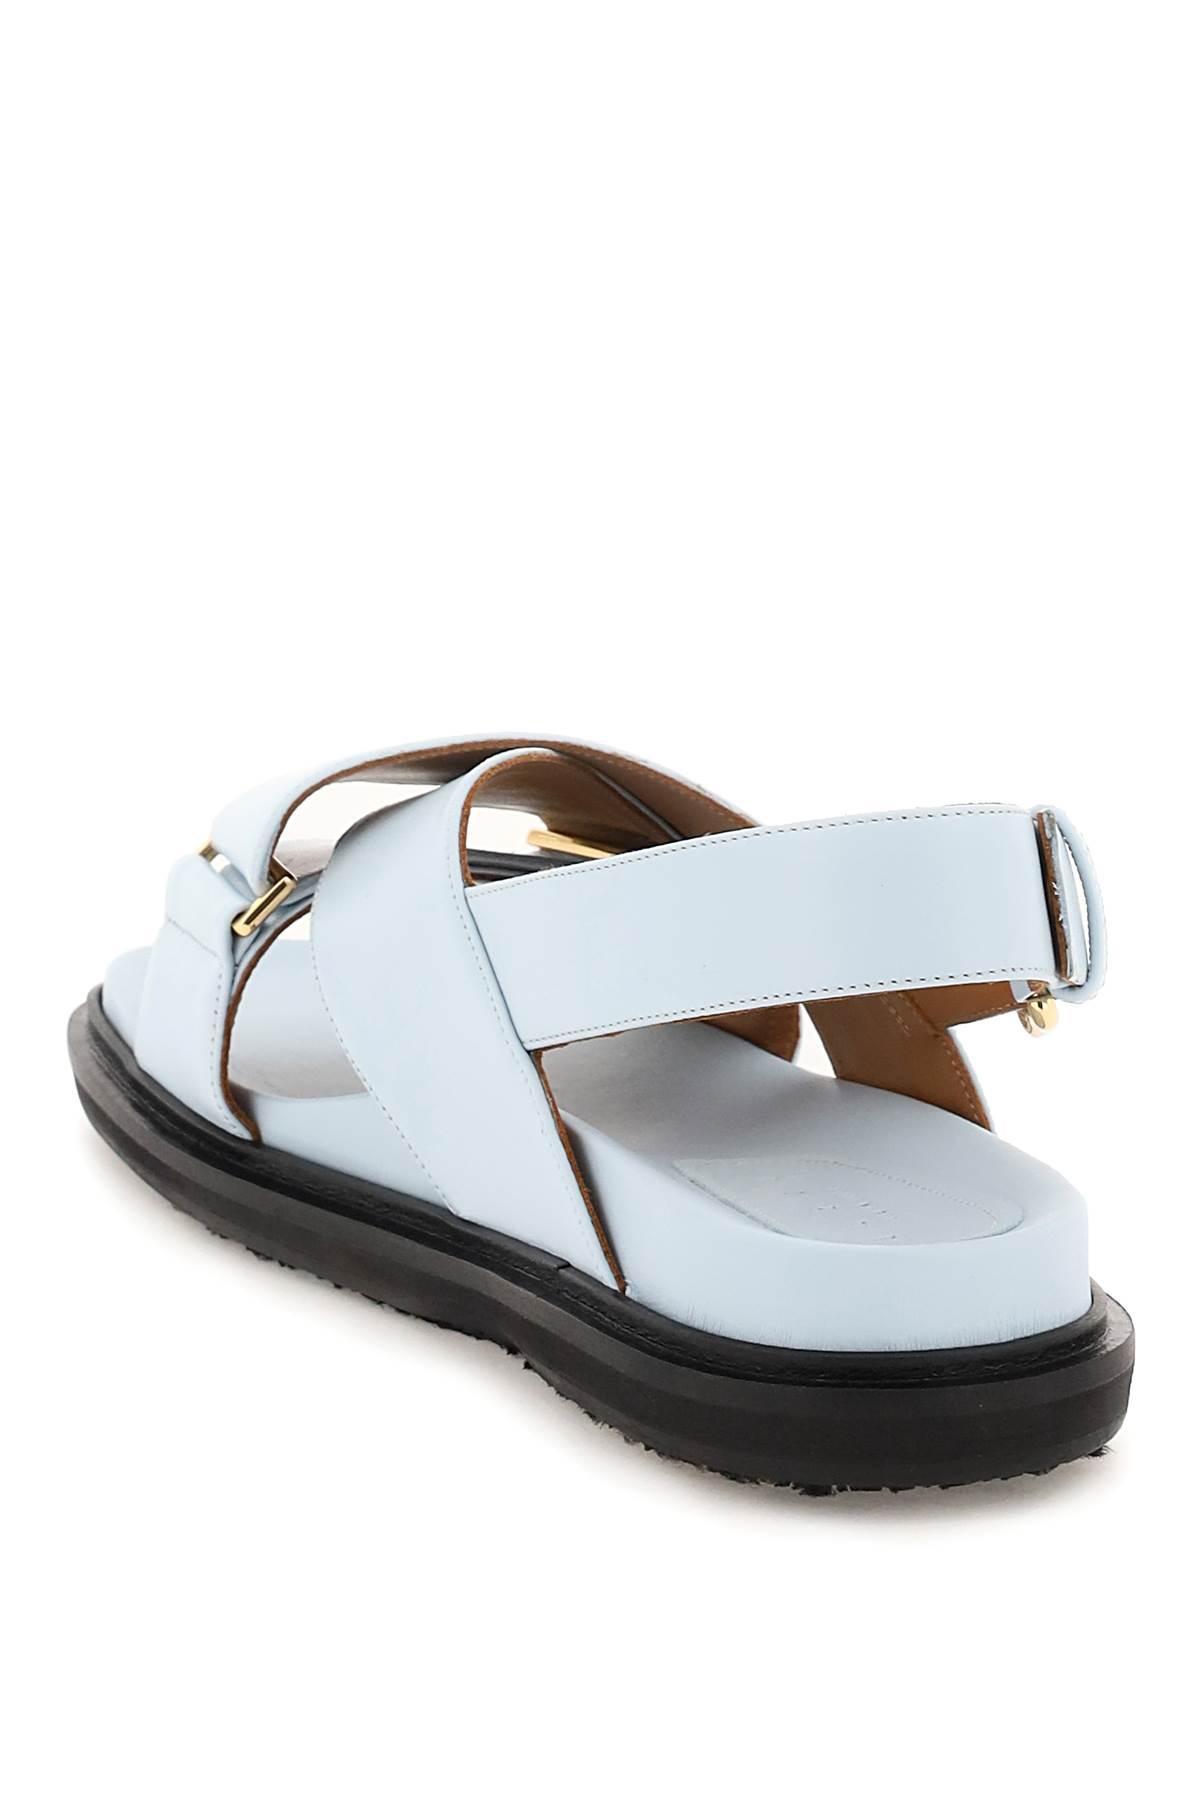 Marni Fussbett Sandals in White | Lyst